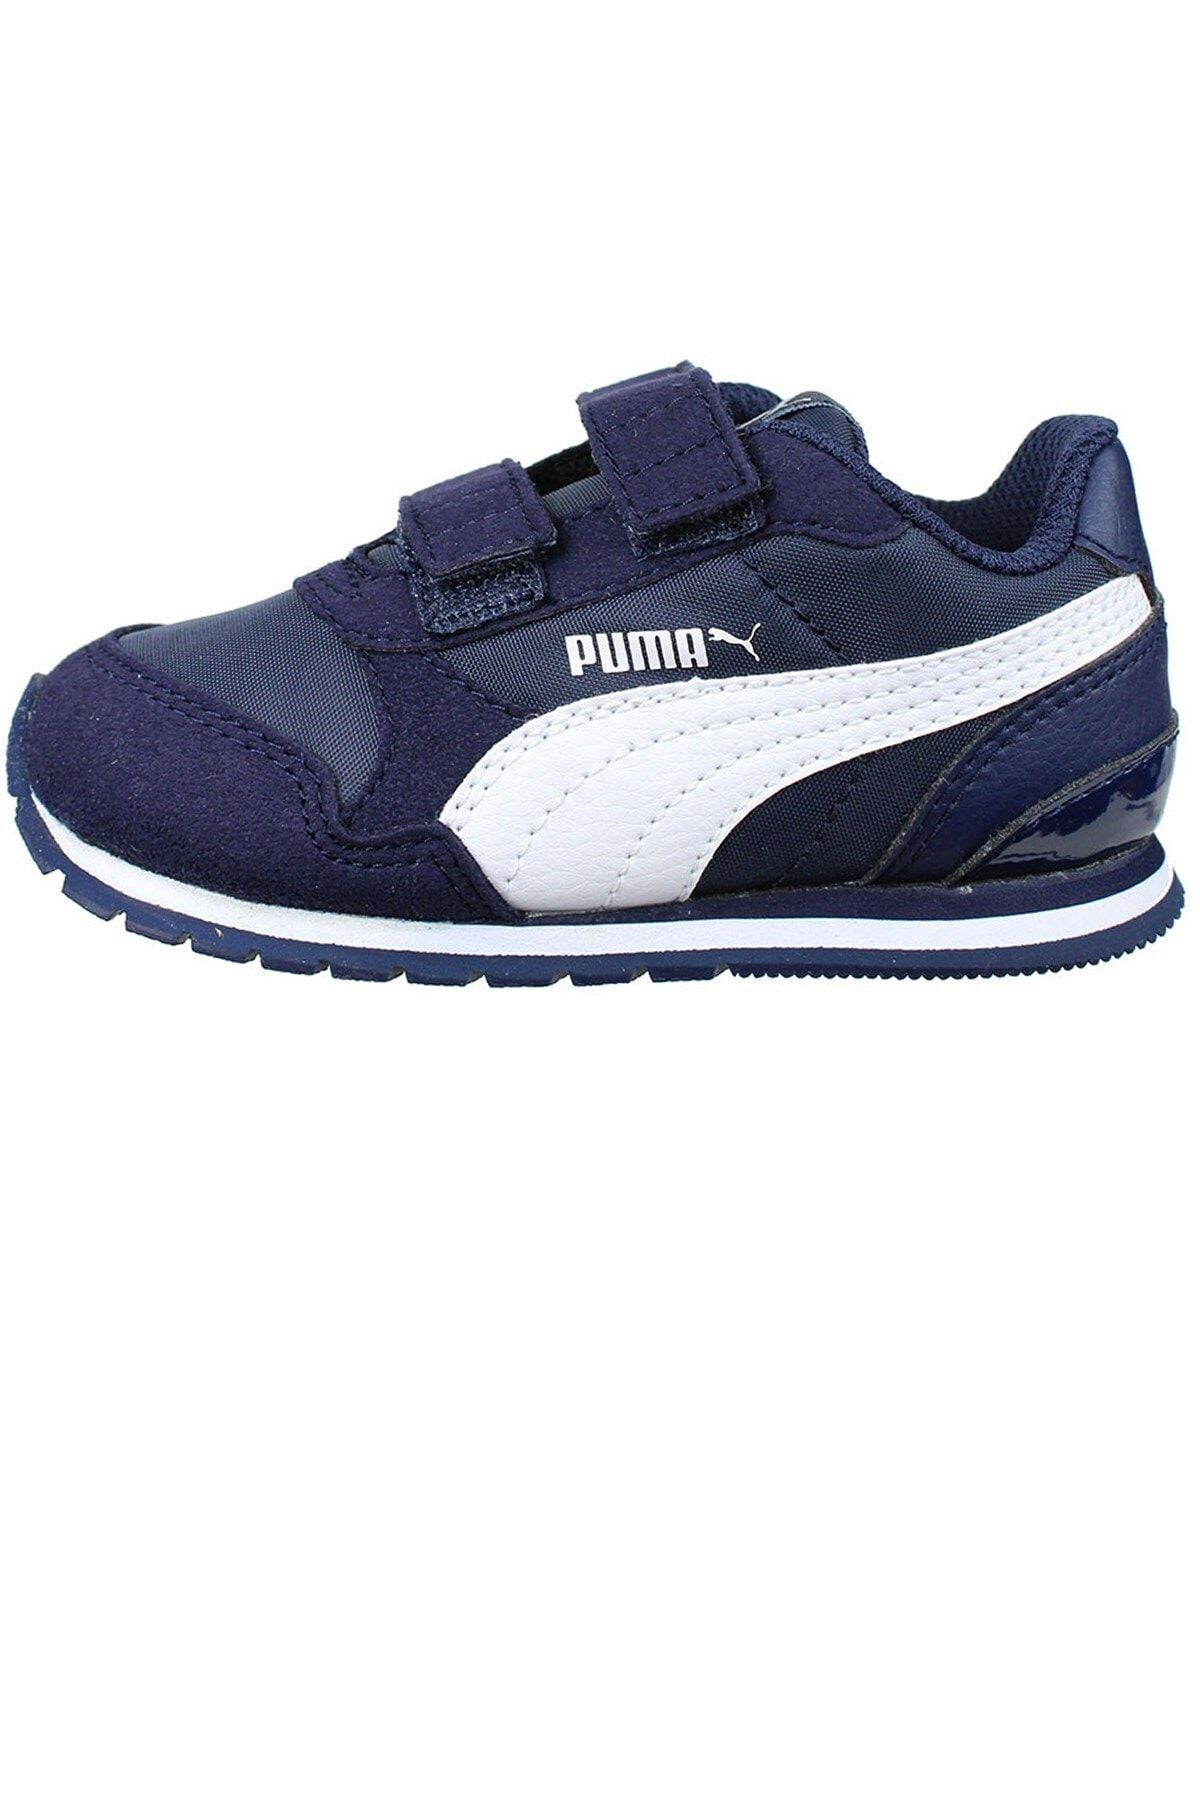 Puma ST RUNNER V2 NL V INF Lacivert Unisex Çocuk Sneaker Ayakkabı 100414787